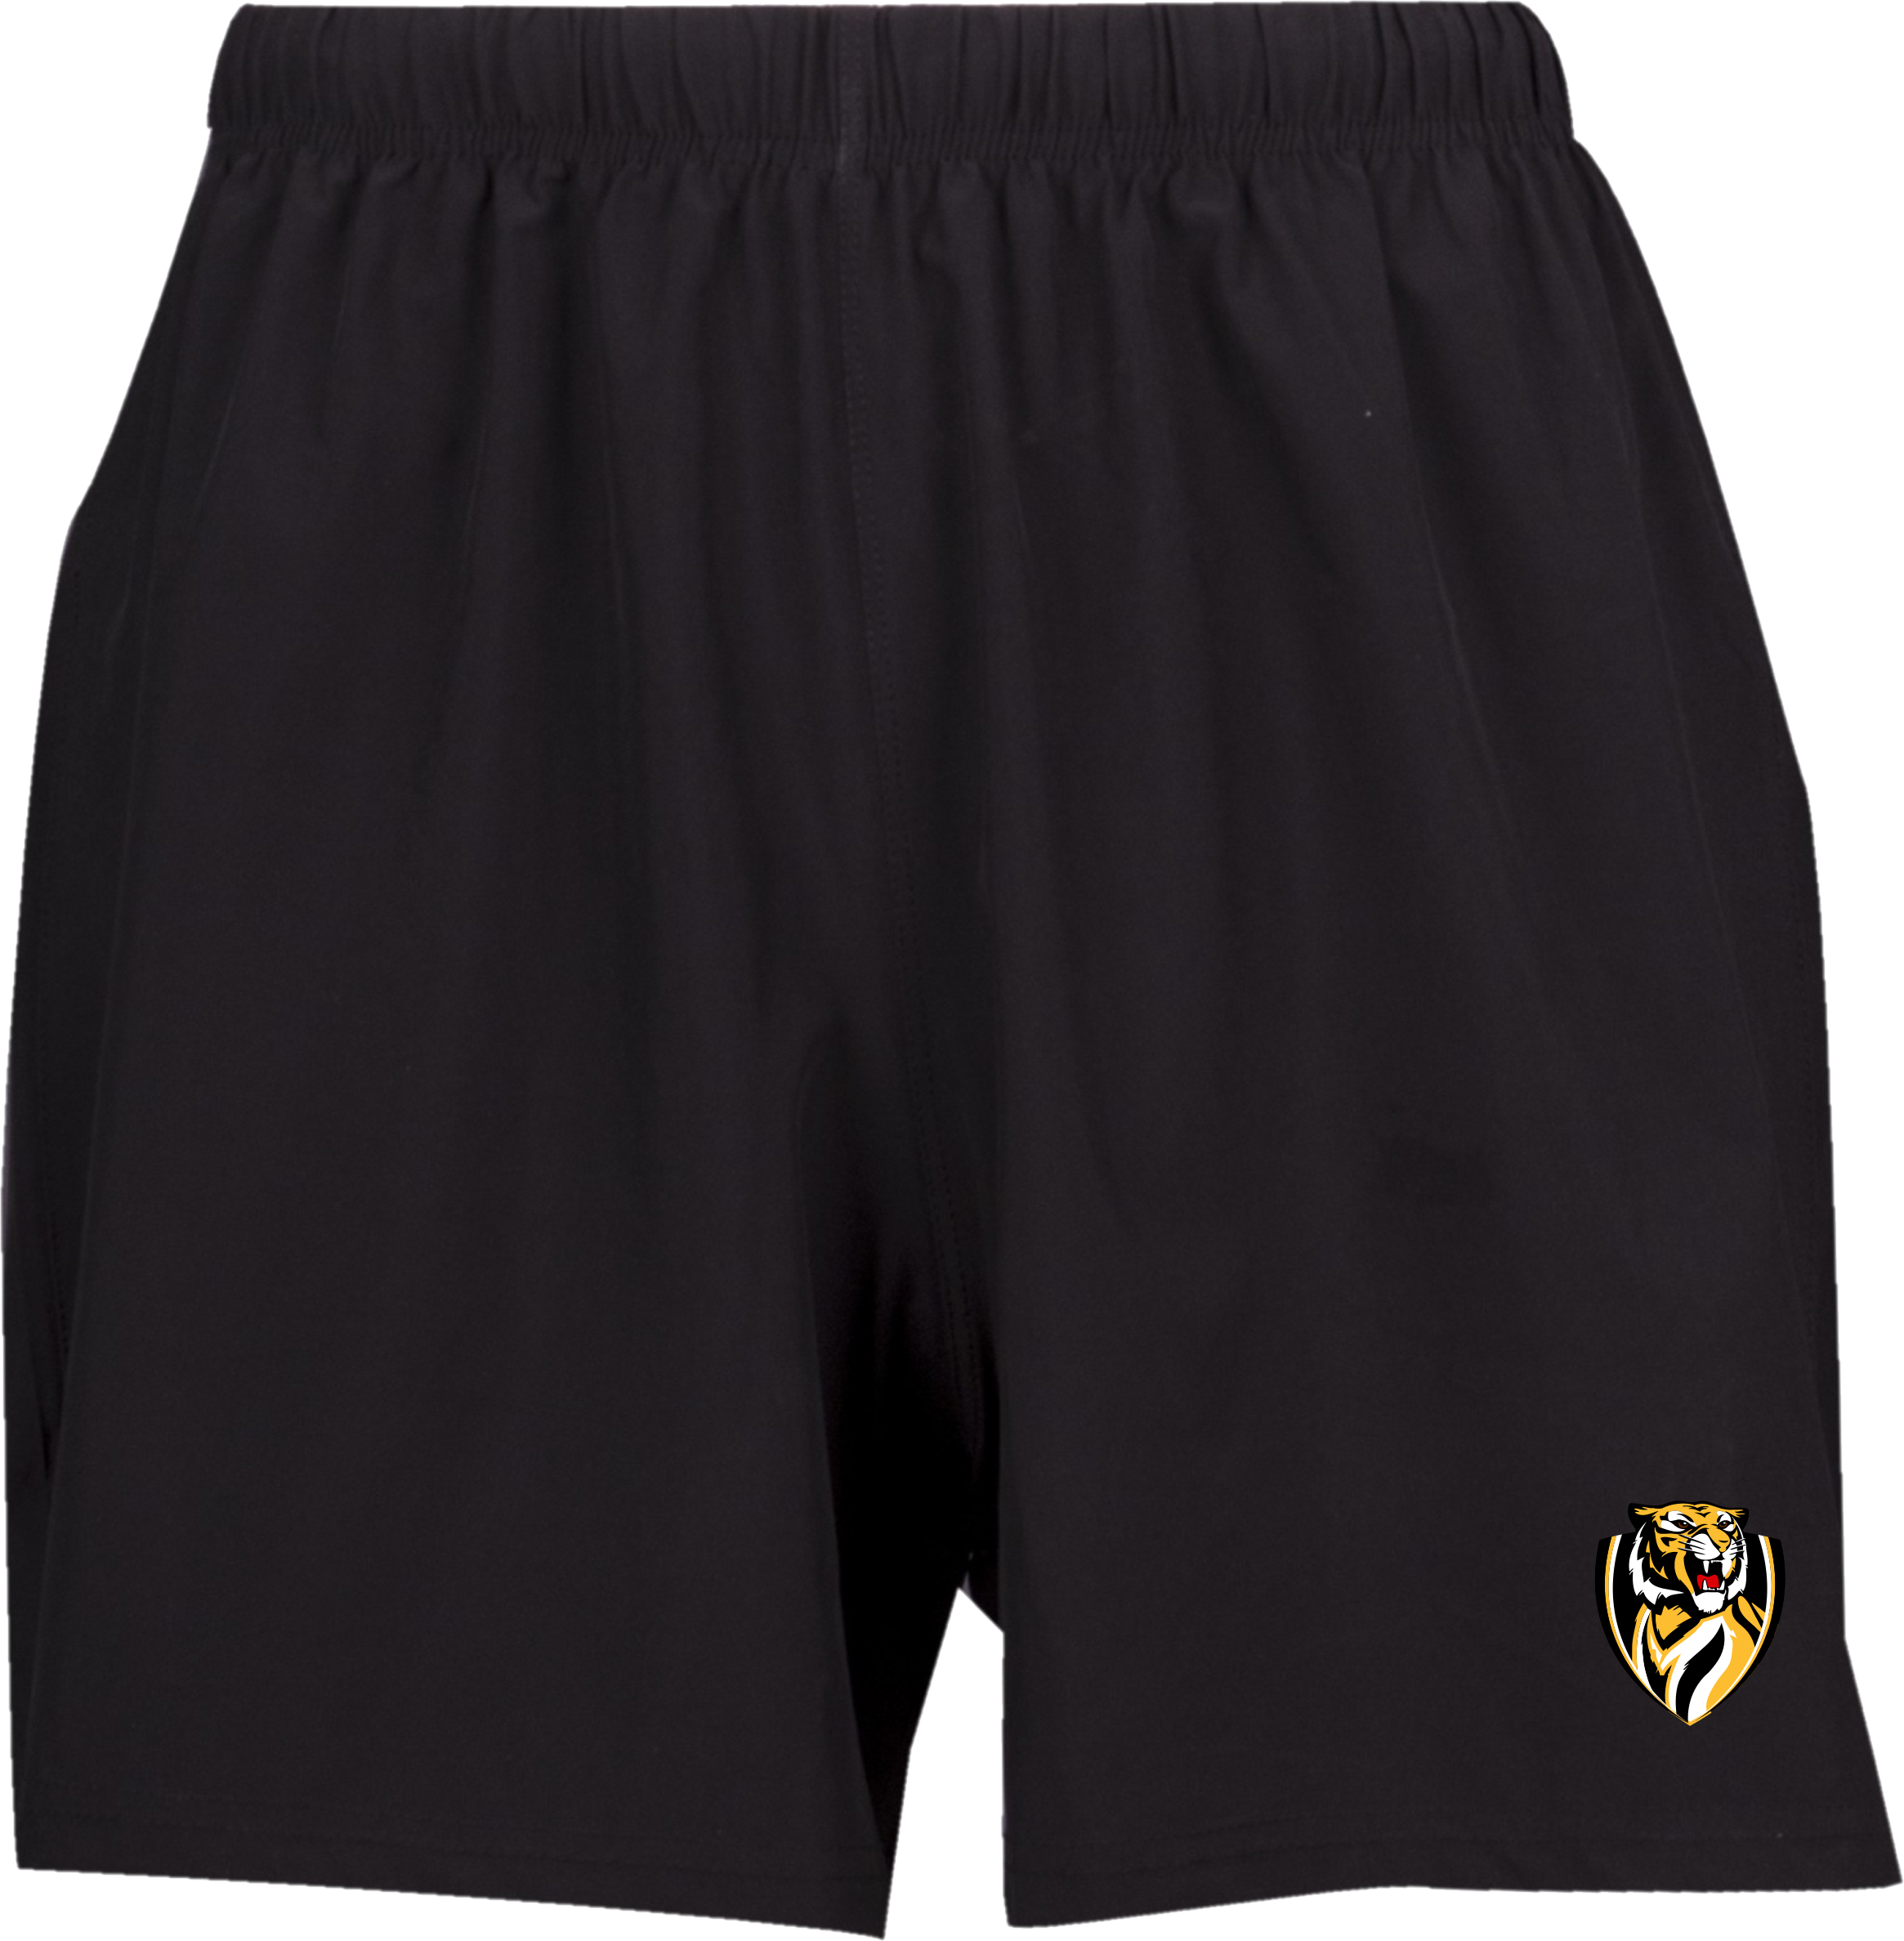 Flex 4 way Stretch Shorts in Black with Logo